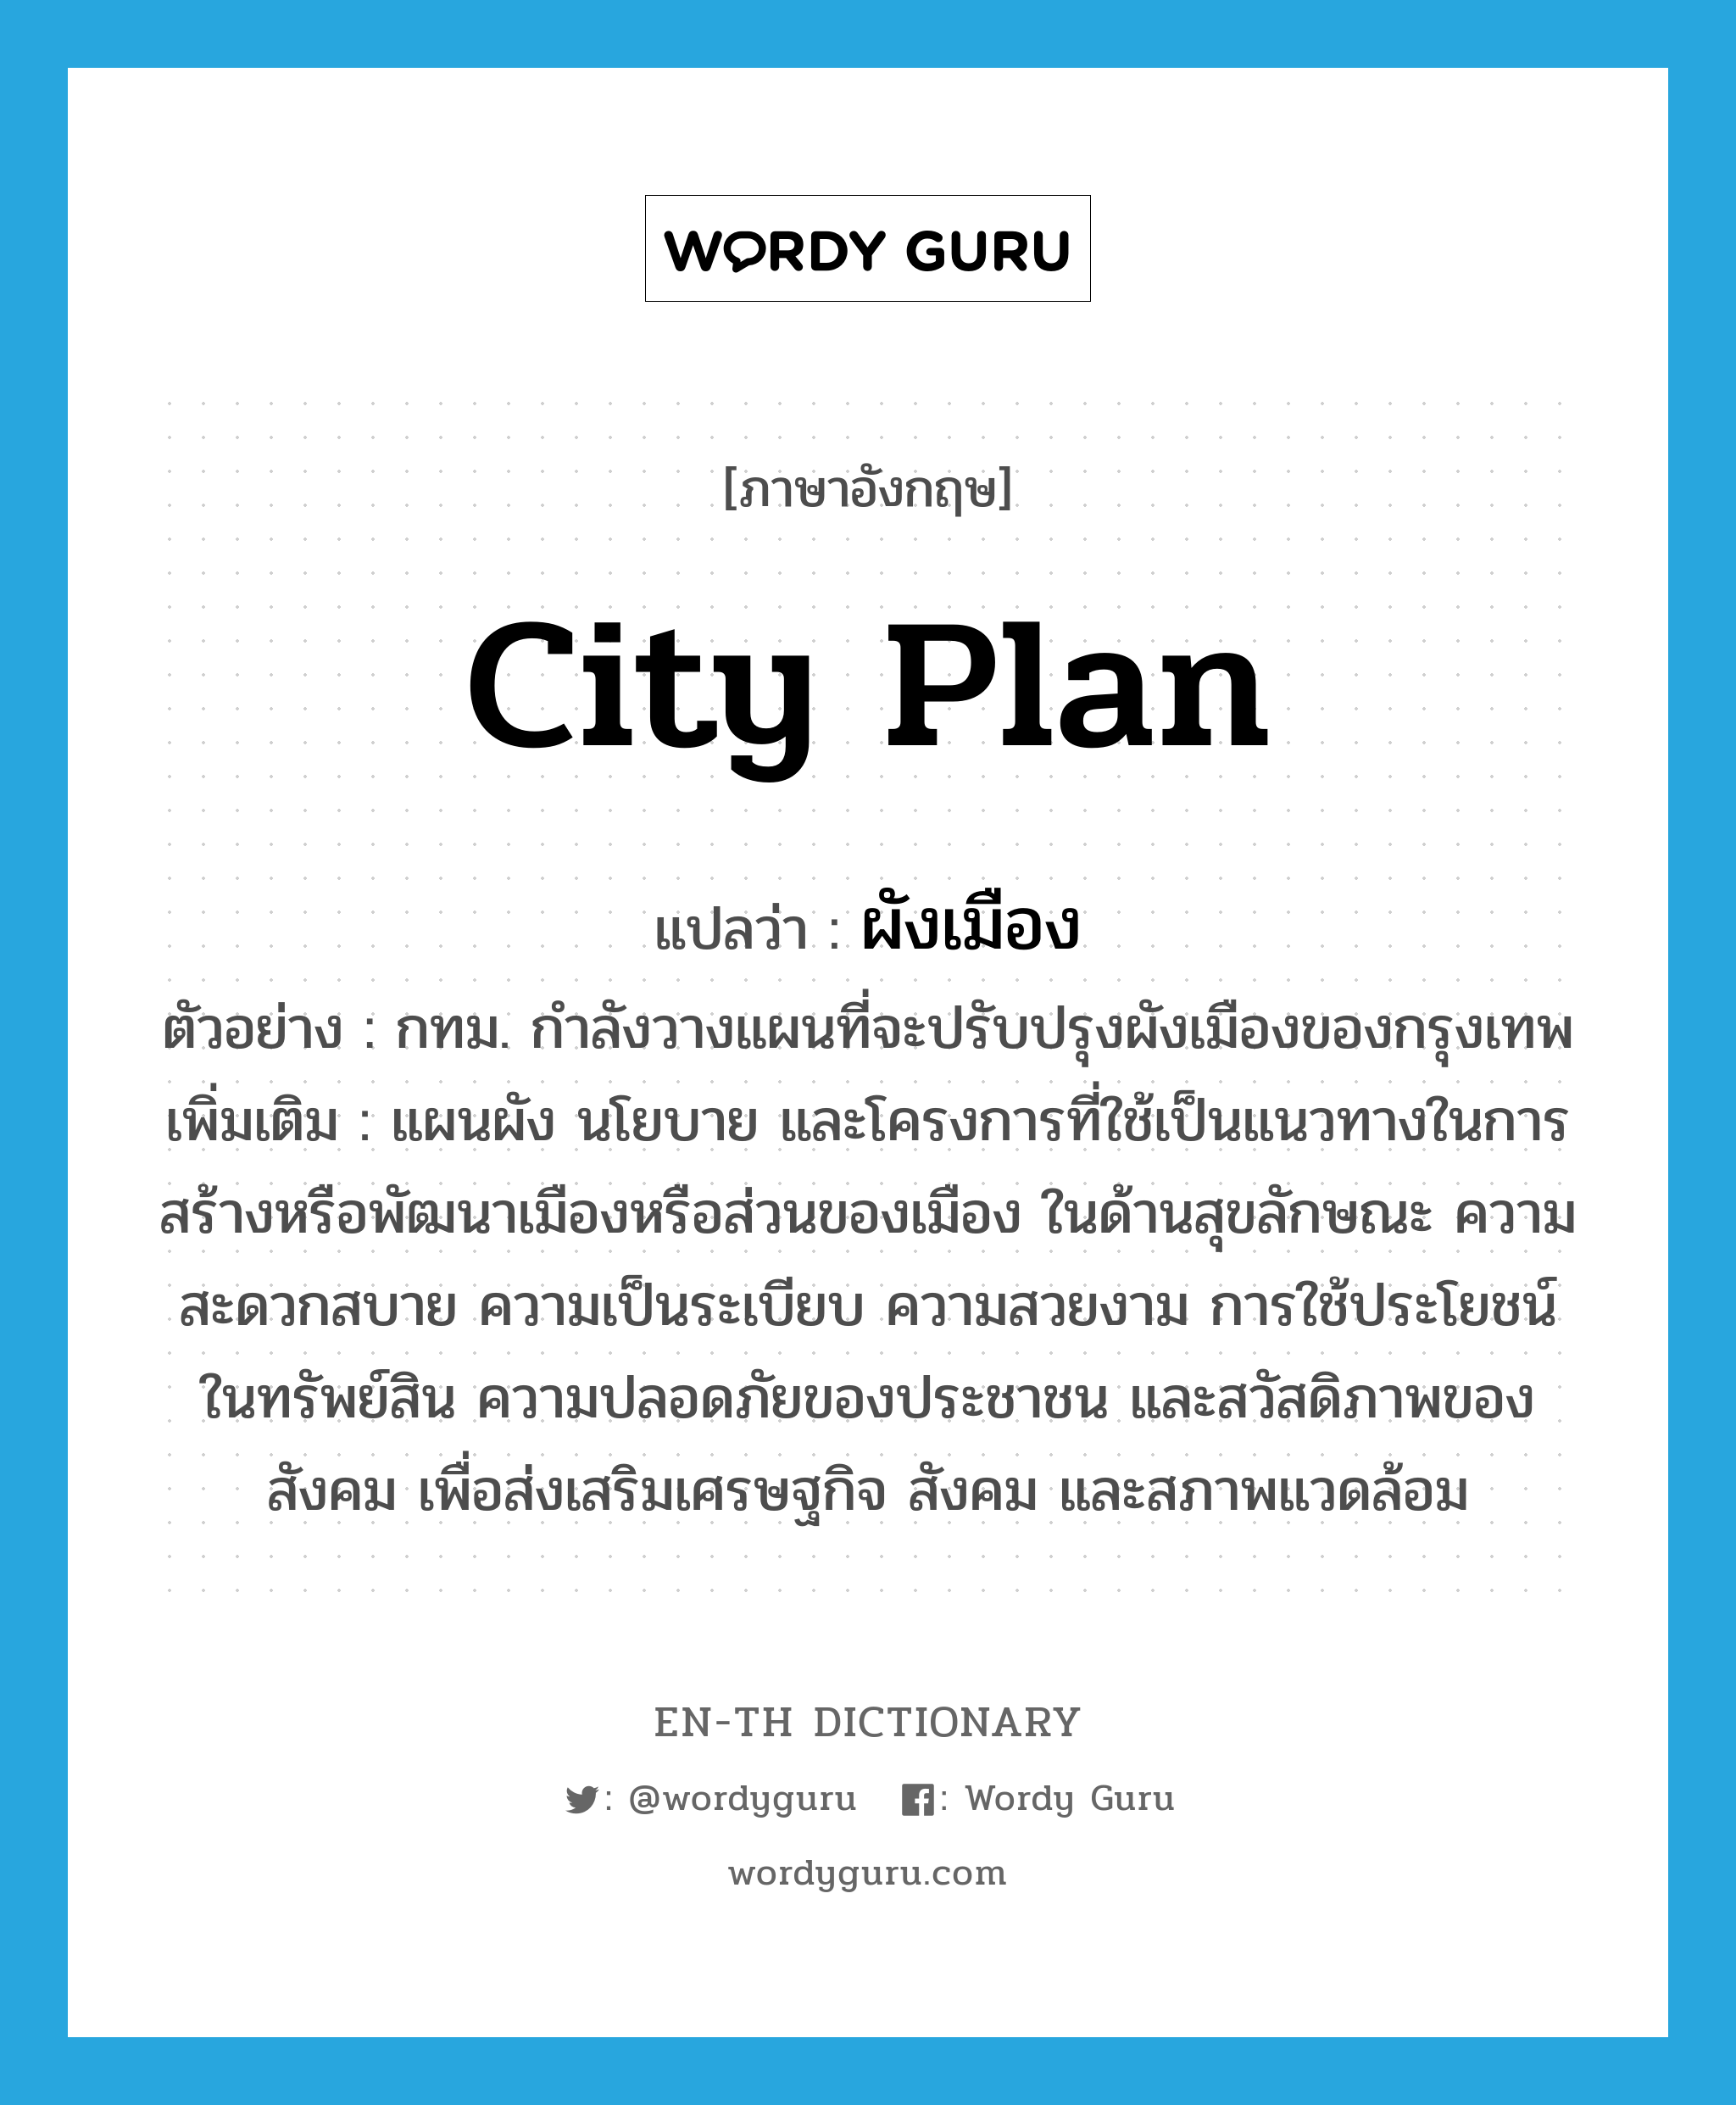 city plan แปลว่า?, คำศัพท์ภาษาอังกฤษ city plan แปลว่า ผังเมือง ประเภท N ตัวอย่าง กทม. กำลังวางแผนที่จะปรับปรุงผังเมืองของกรุงเทพ เพิ่มเติม แผนผัง นโยบาย และโครงการที่ใช้เป็นแนวทางในการสร้างหรือพัฒนาเมืองหรือส่วนของเมือง ในด้านสุขลักษณะ ความสะดวกสบาย ความเป็นระเบียบ ความสวยงาม การใช้ประโยชน์ในทรัพย์สิน ความปลอดภัยของประชาชน และสวัสดิภาพของสังคม เพื่อส่งเสริมเศรษฐกิจ สังคม และสภาพแวดล้อม หมวด N